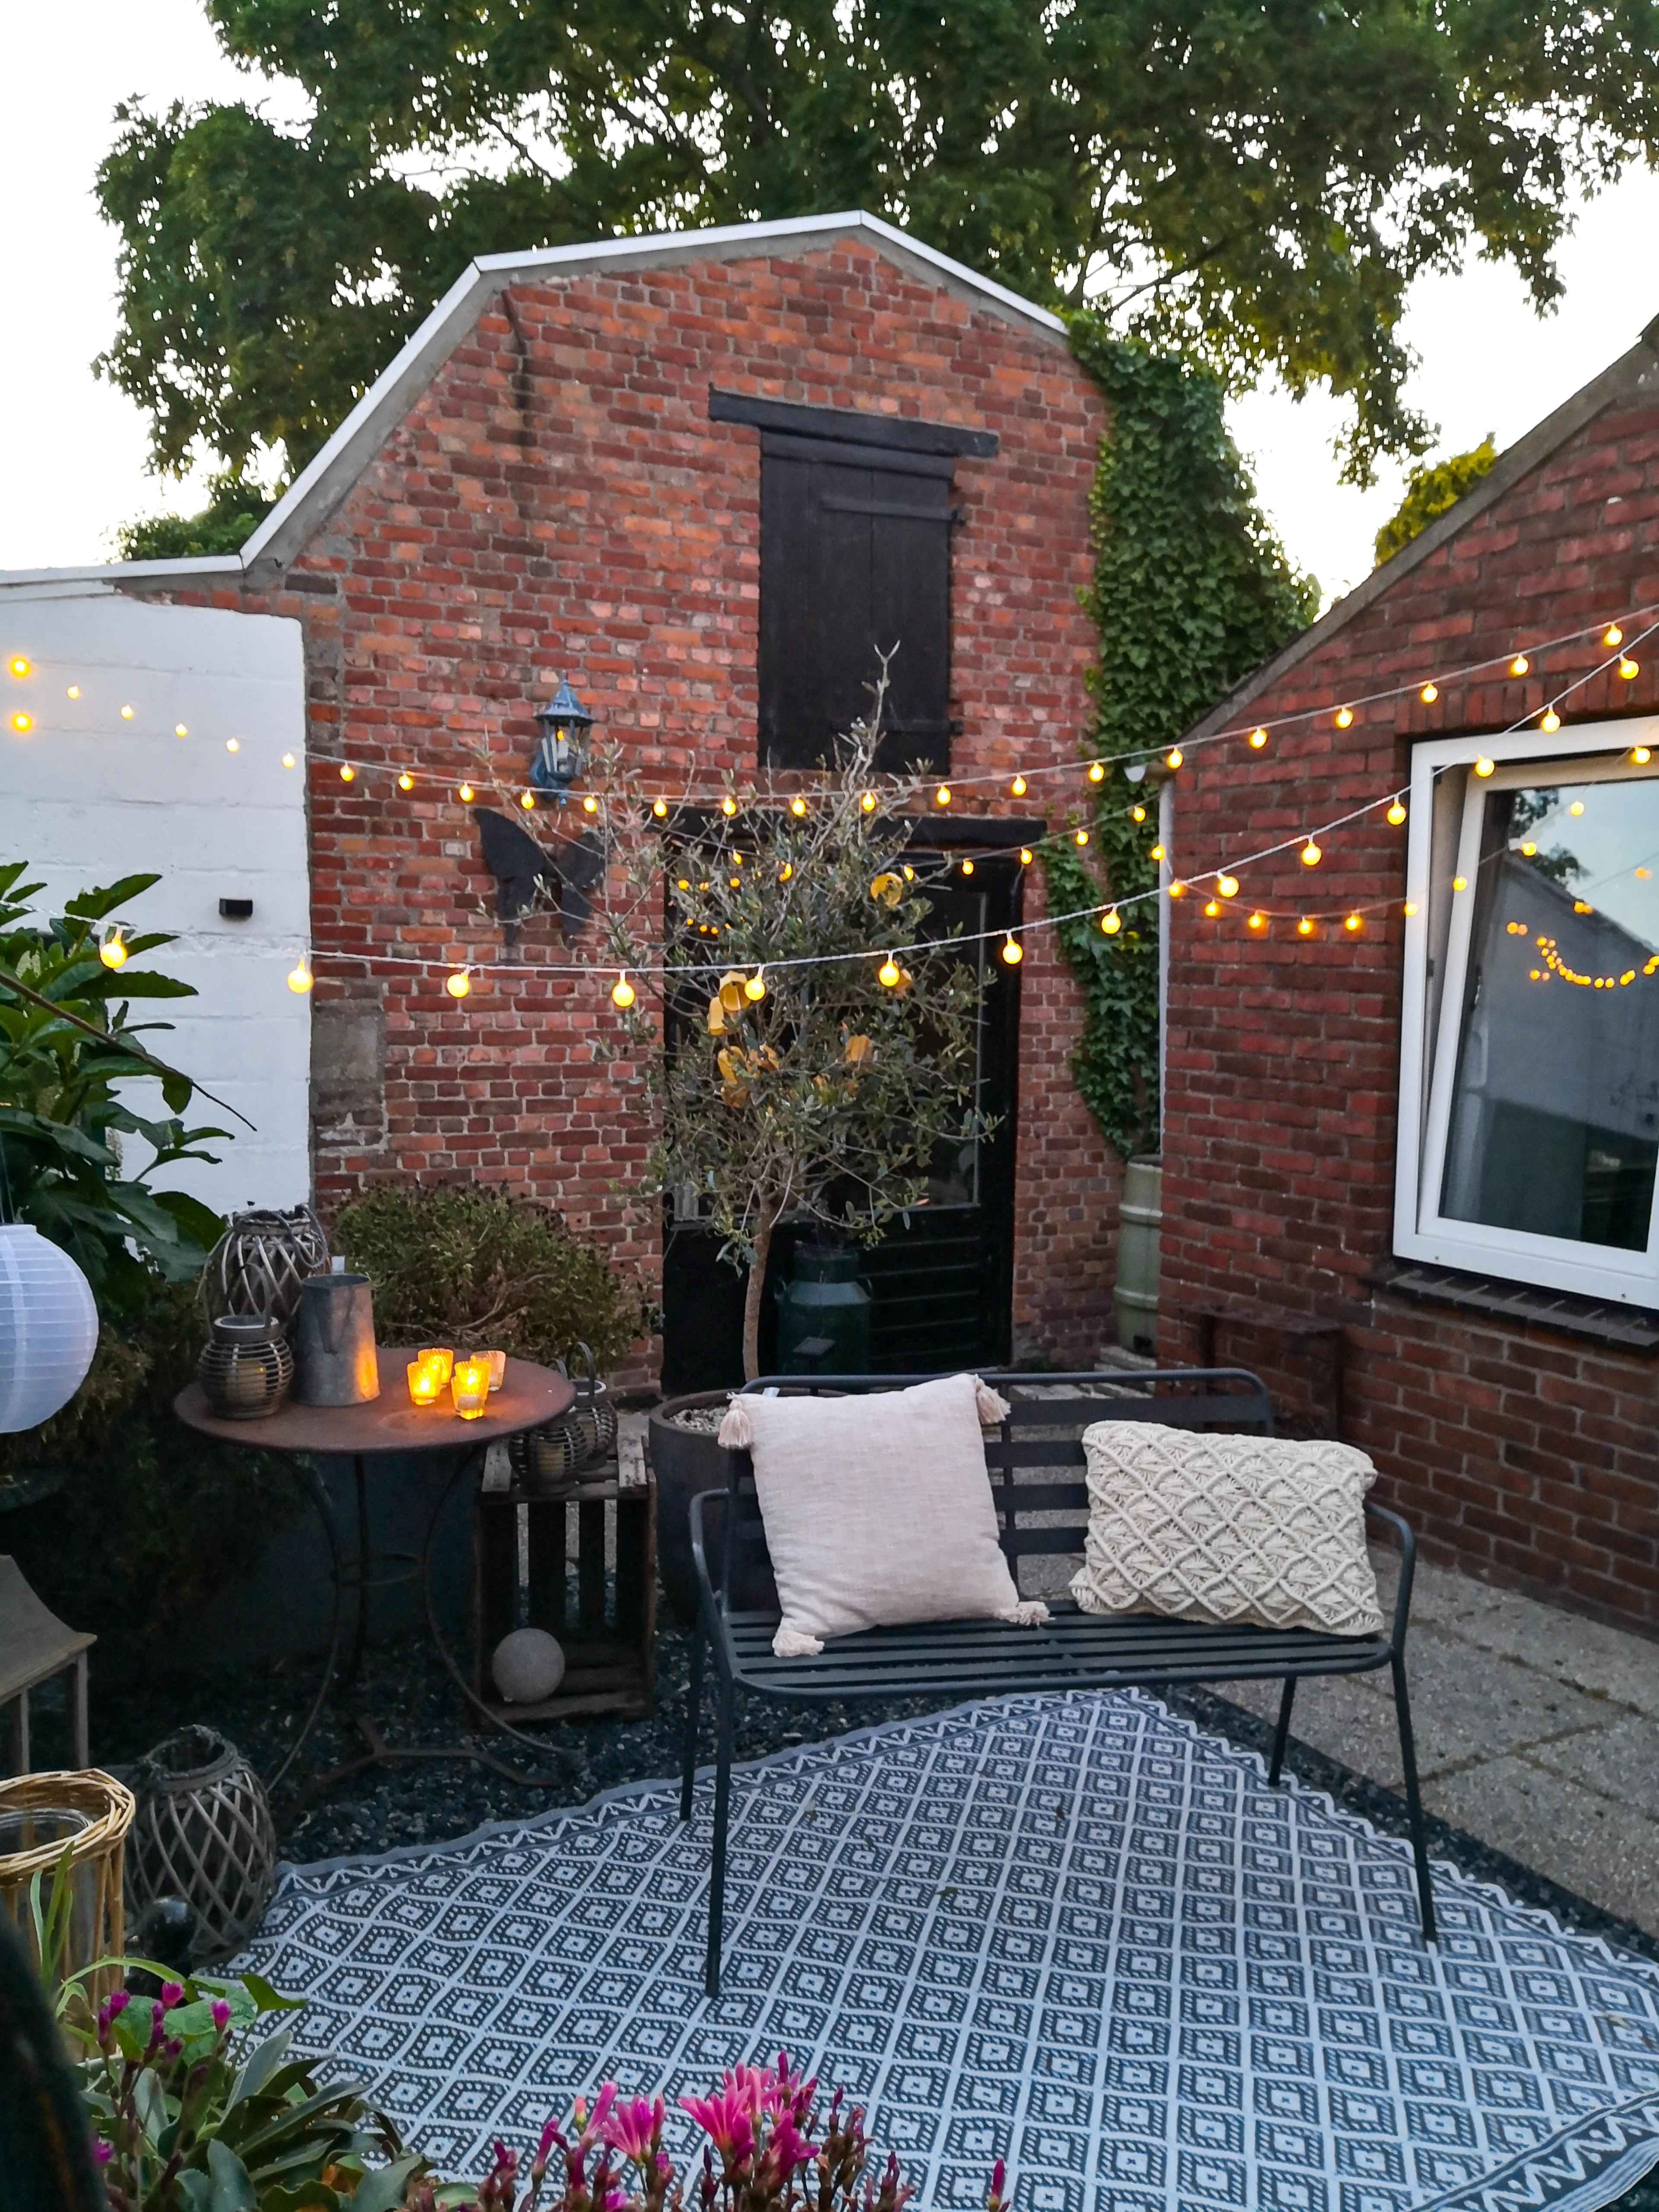 Abends in unserem Innenhof 🕯
#hygge #innenhof #backyard #gemütlich #lichterketten #terrasse